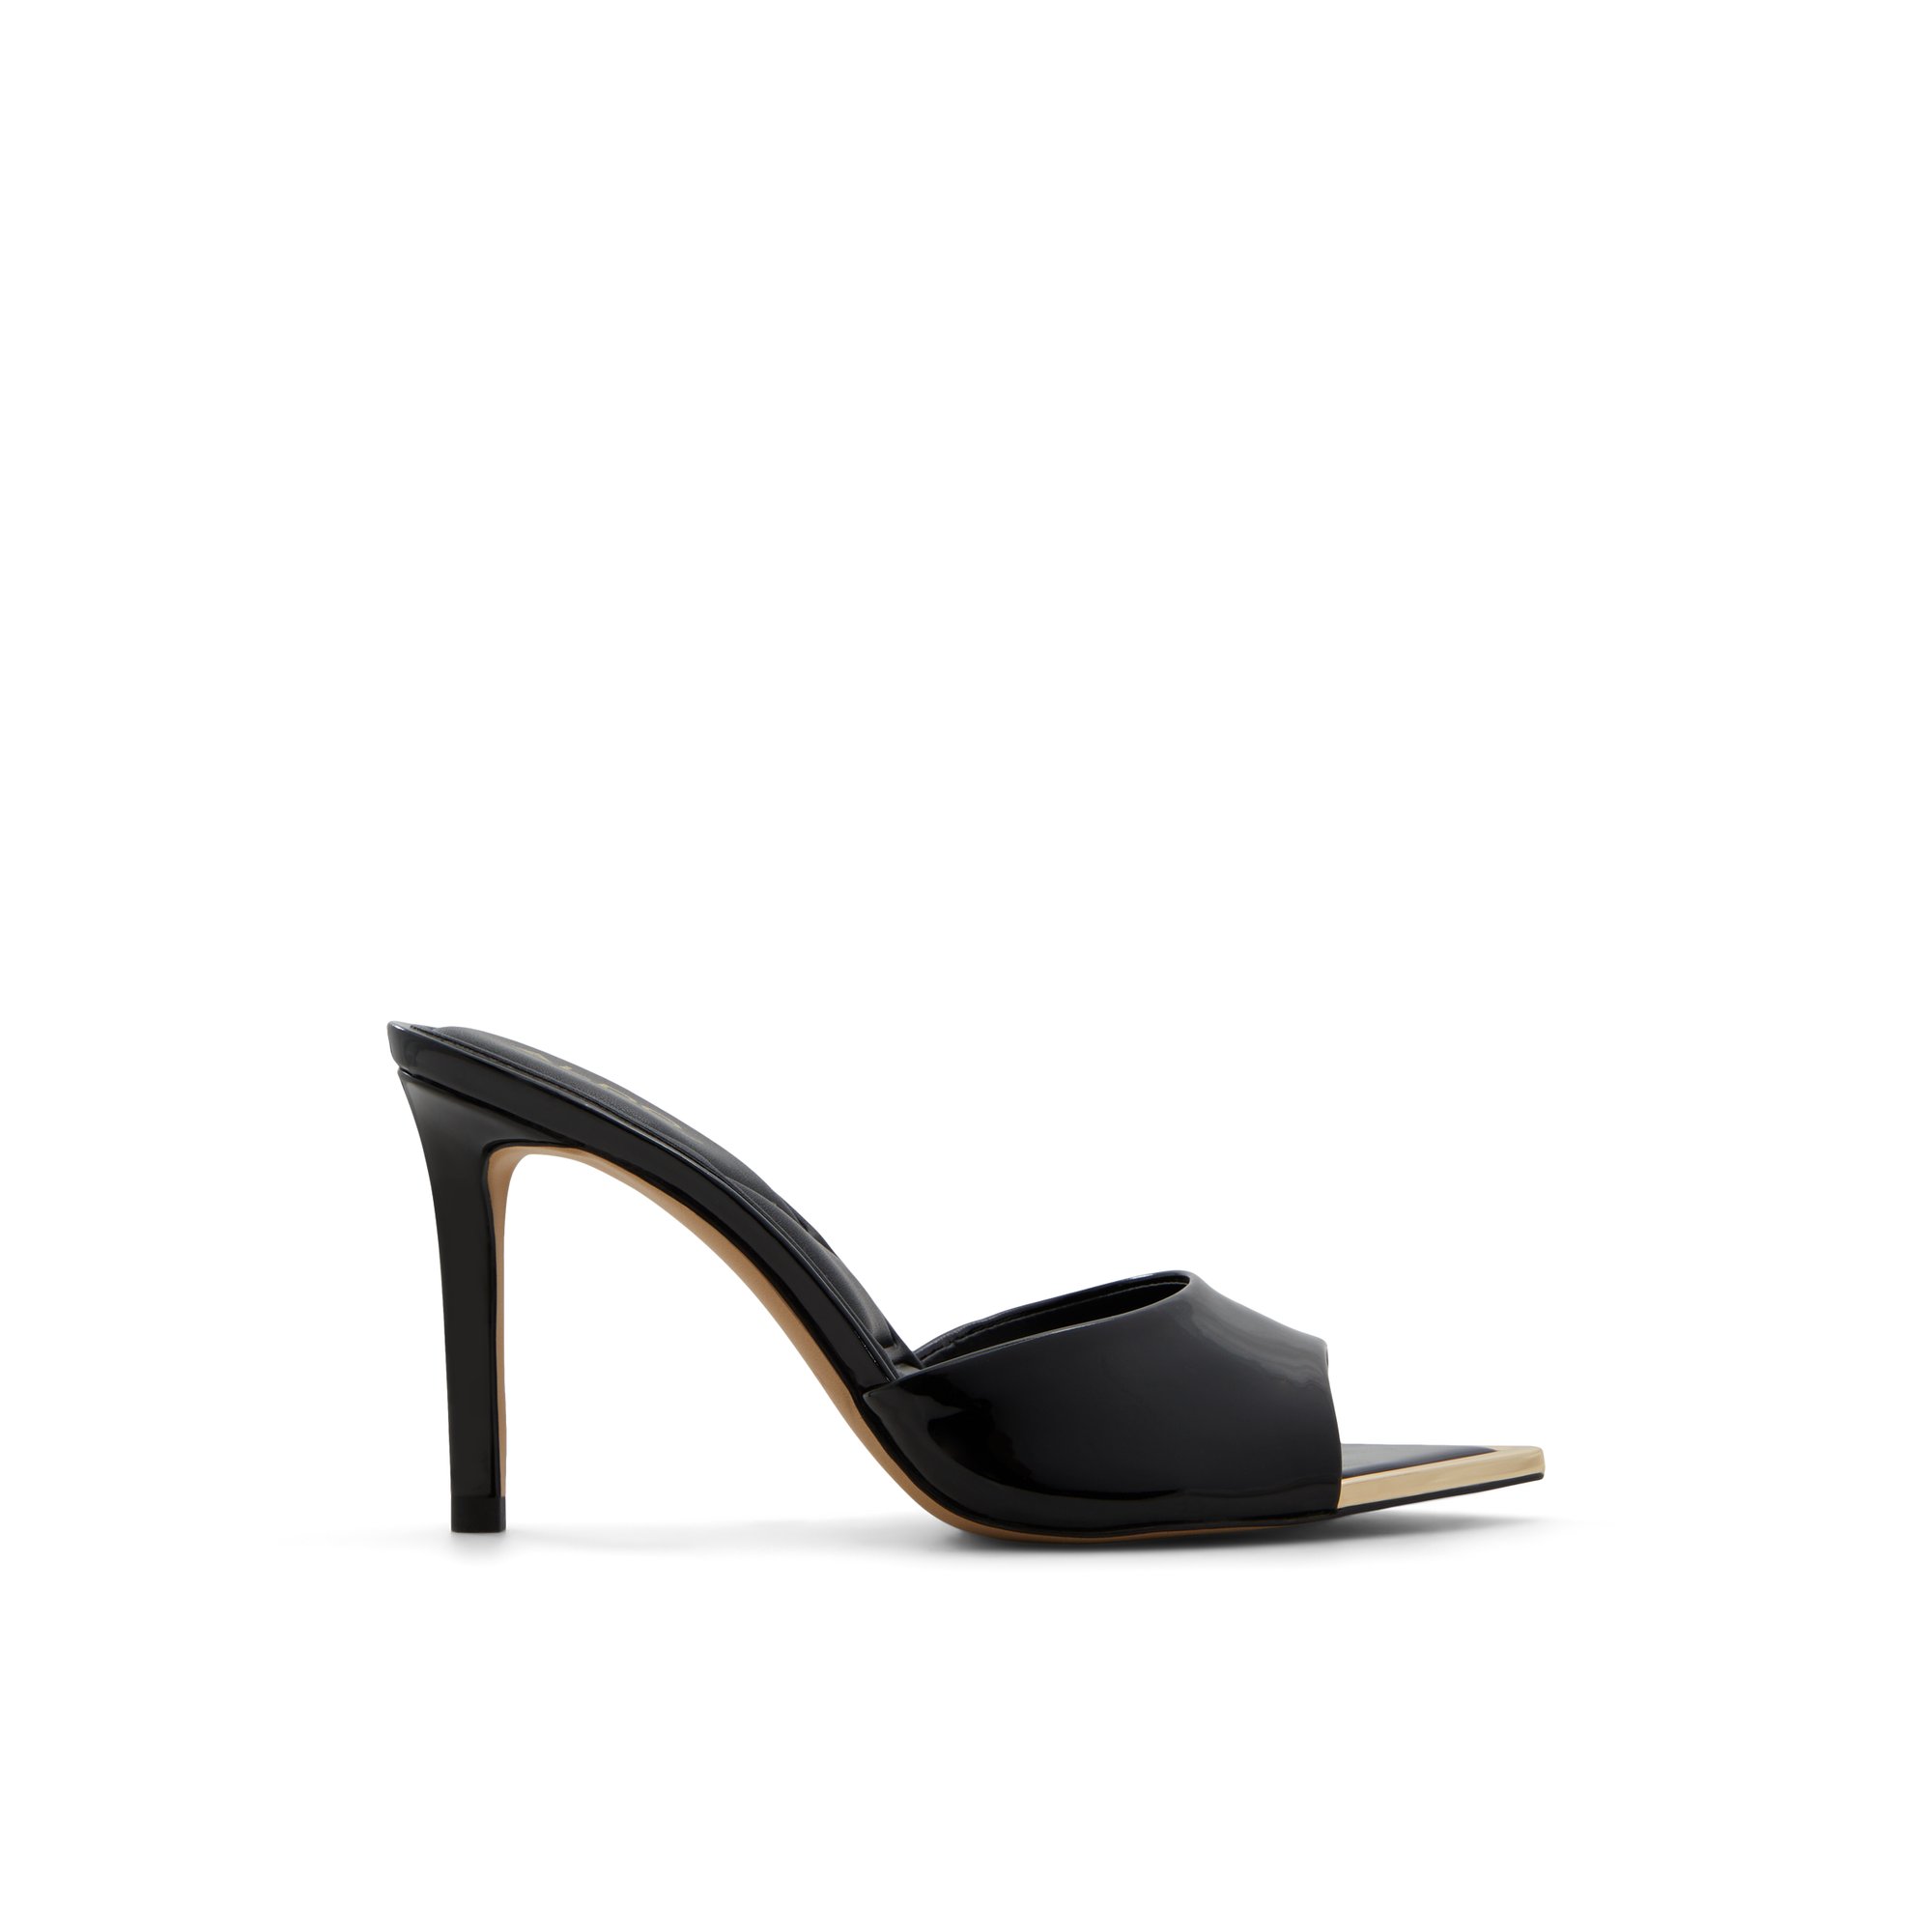 ALDO Anniebrilden - Women's Heeled Mules Sandals - Black